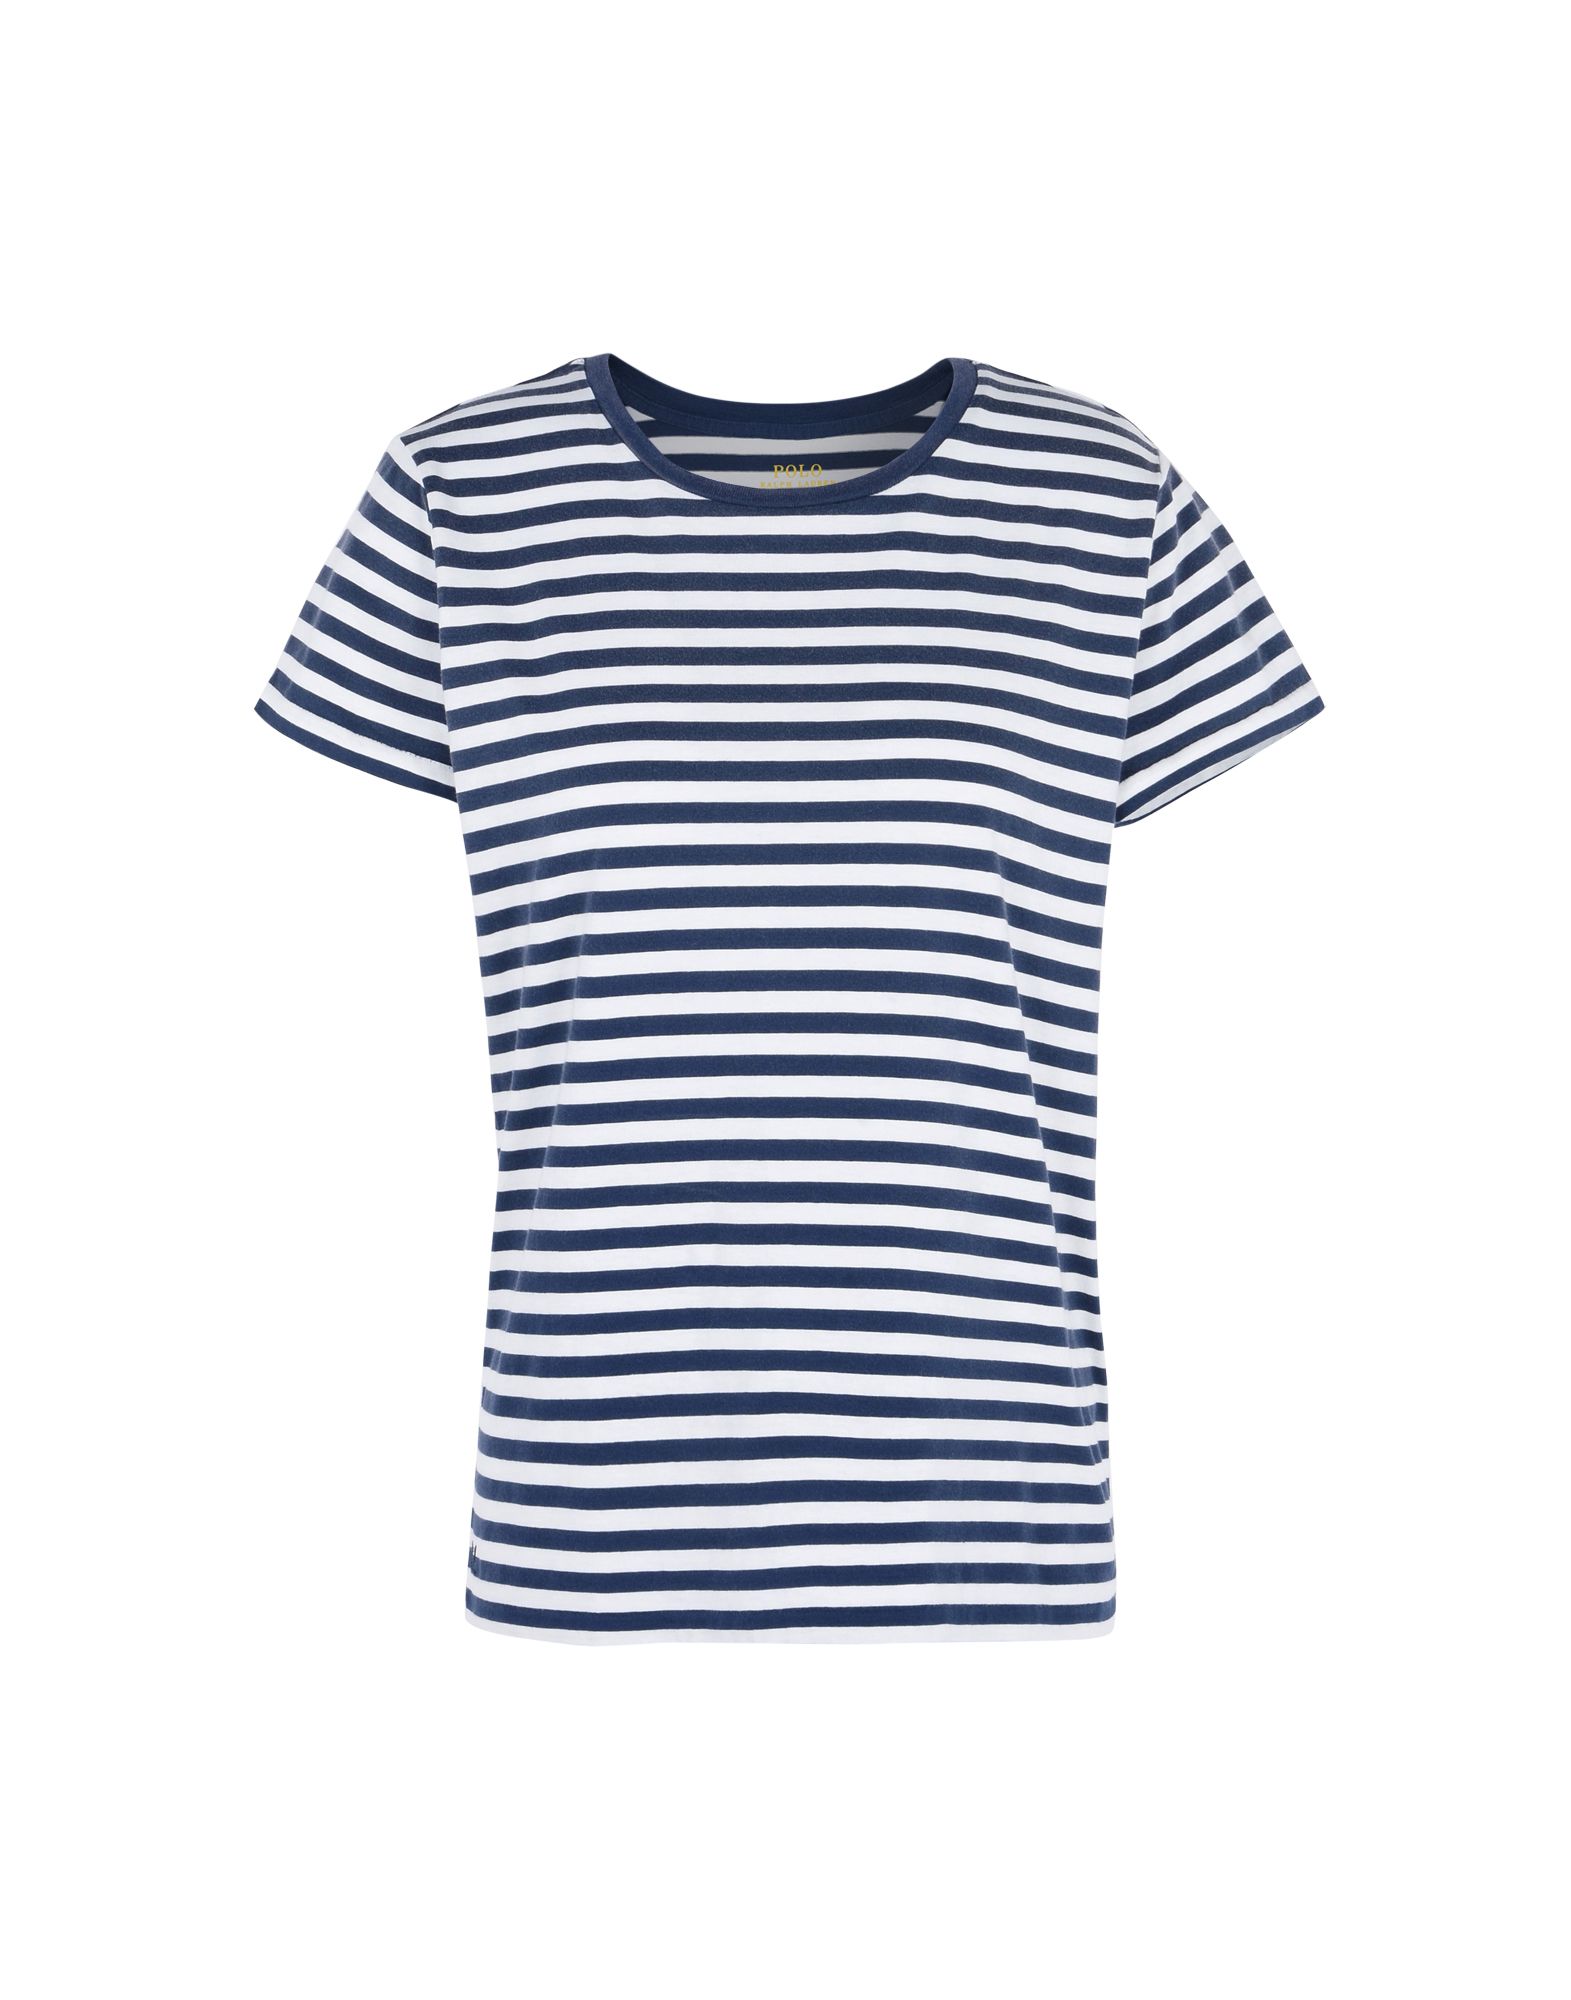 《送料無料》POLO RALPH LAUREN レディース T シャツ ダークブルー XL コットン 100% Striped Cotton Jersey T Shirt